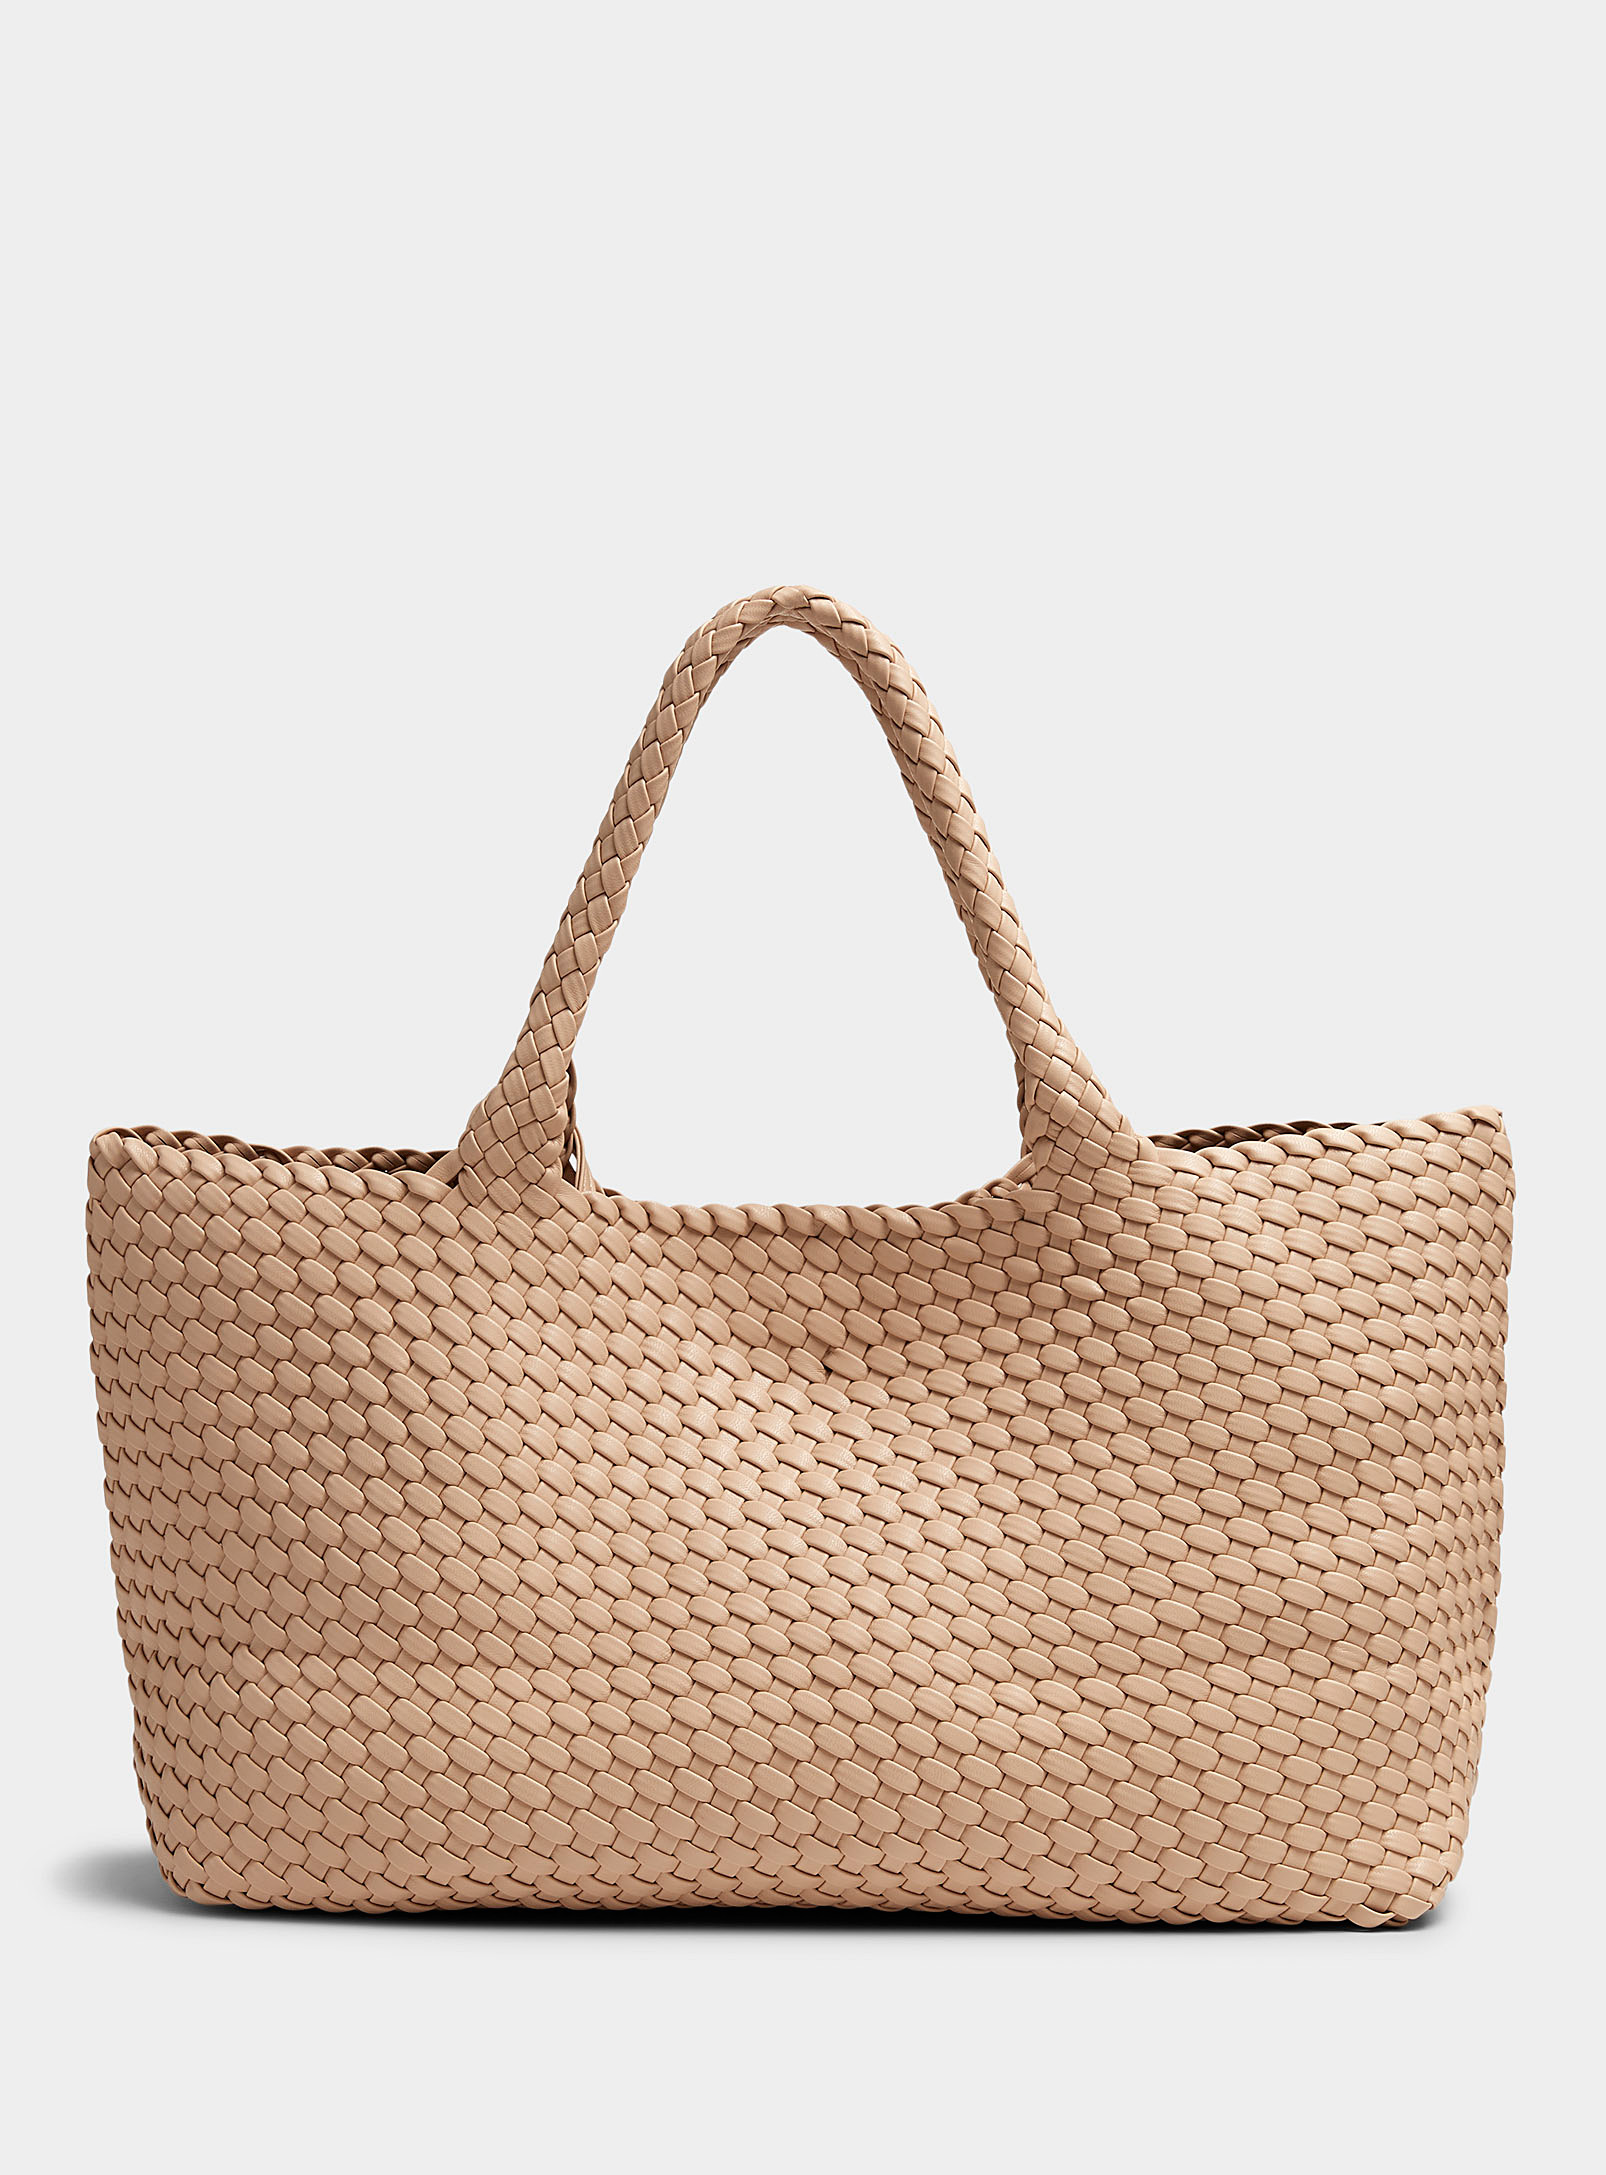 Simons - Women's Basketweave Tote Bag